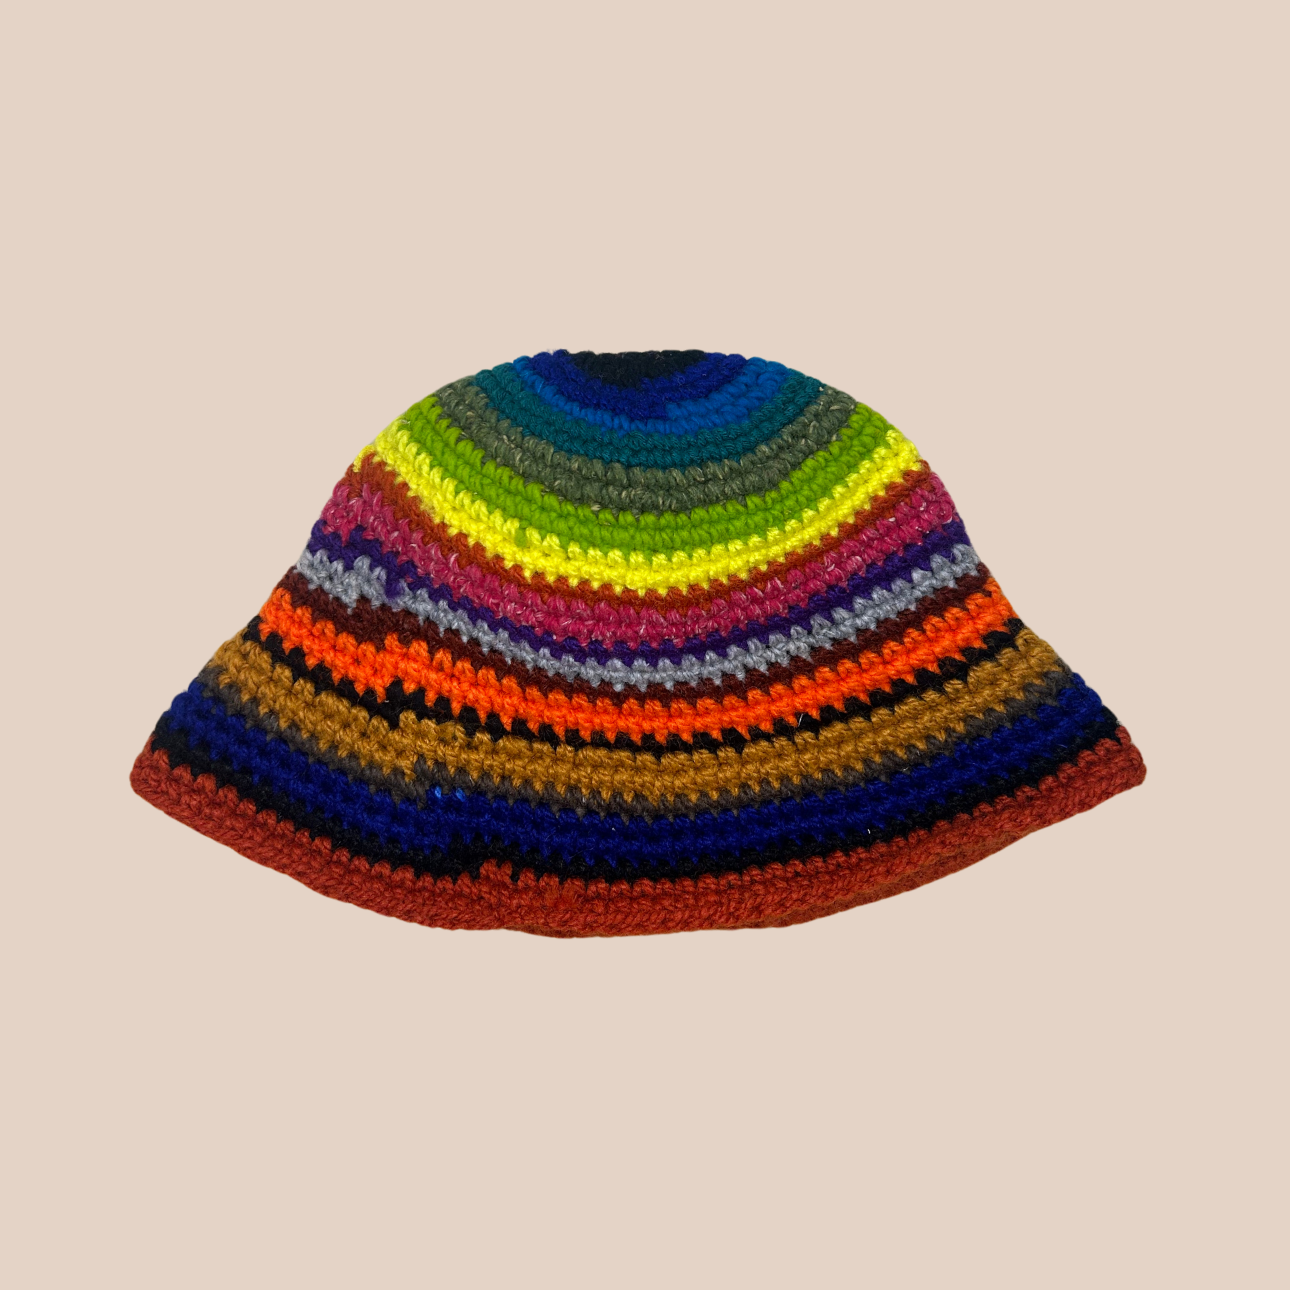 Un bucket hat rayé crocheté en laine et acrylique, arborant des couleurs vives et audacieuses